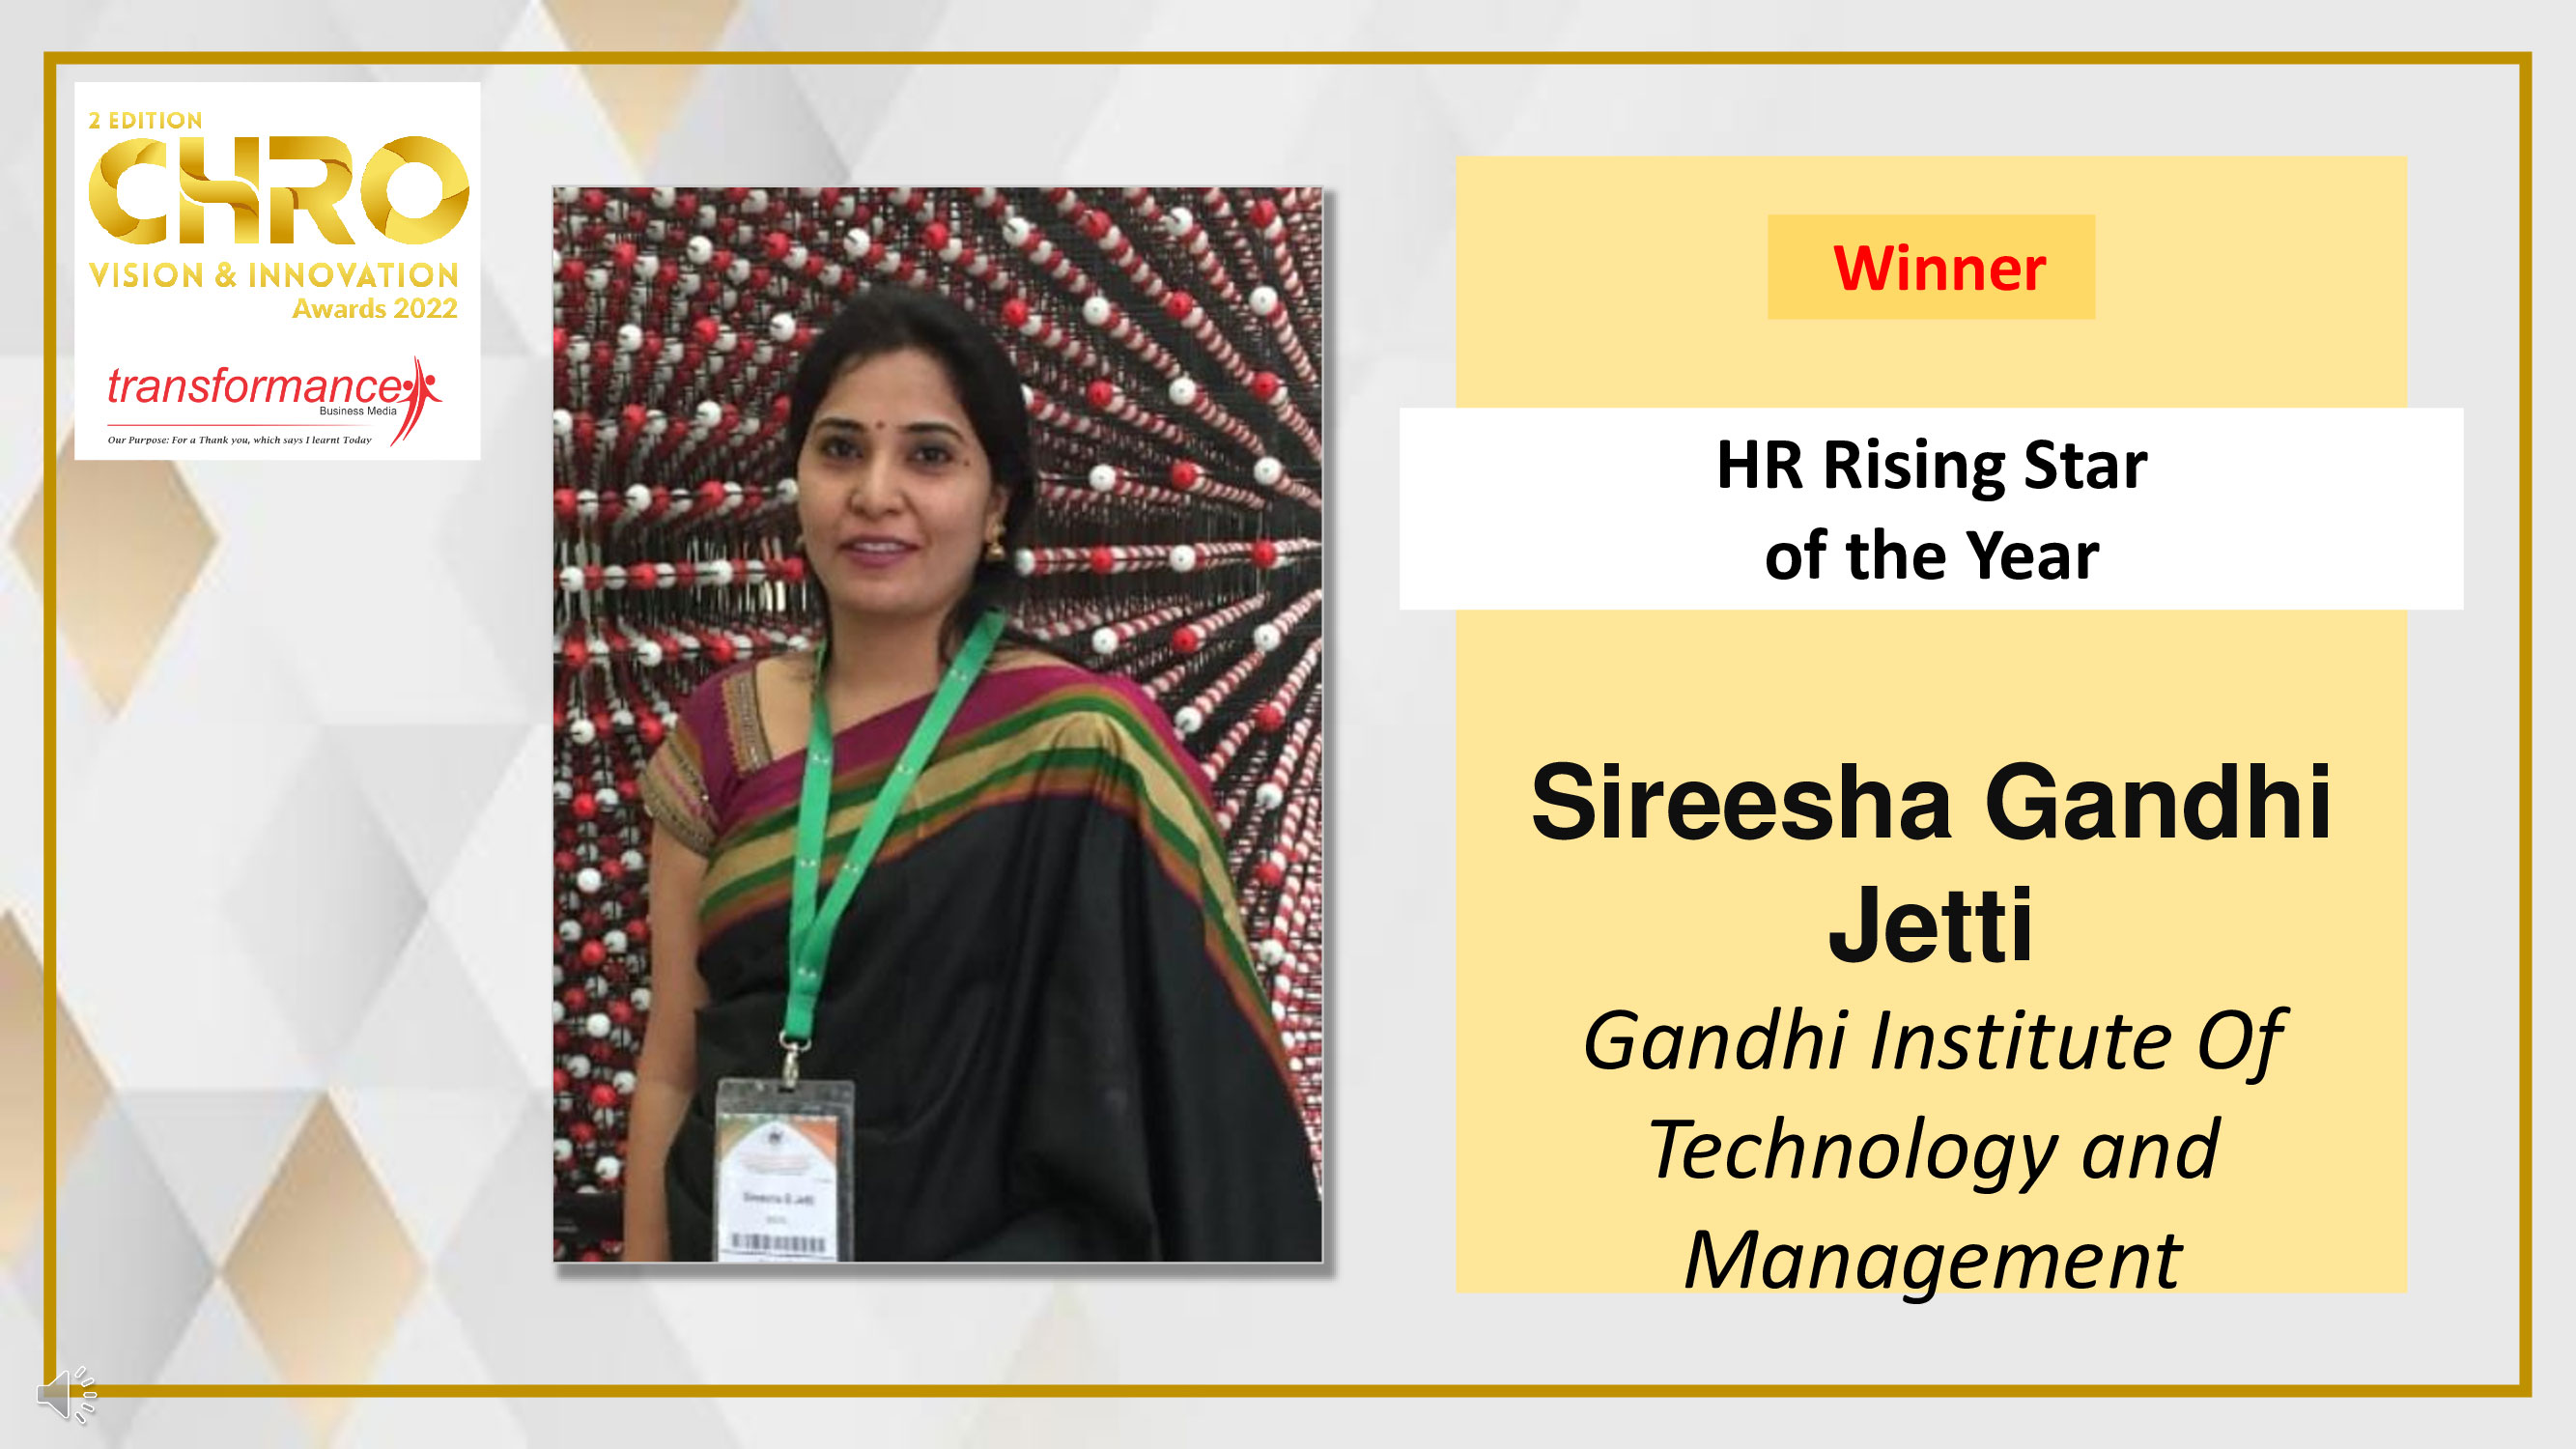 Sireesha Gandhi Jetti, Gandhi Institute Of Technology
                            and Management